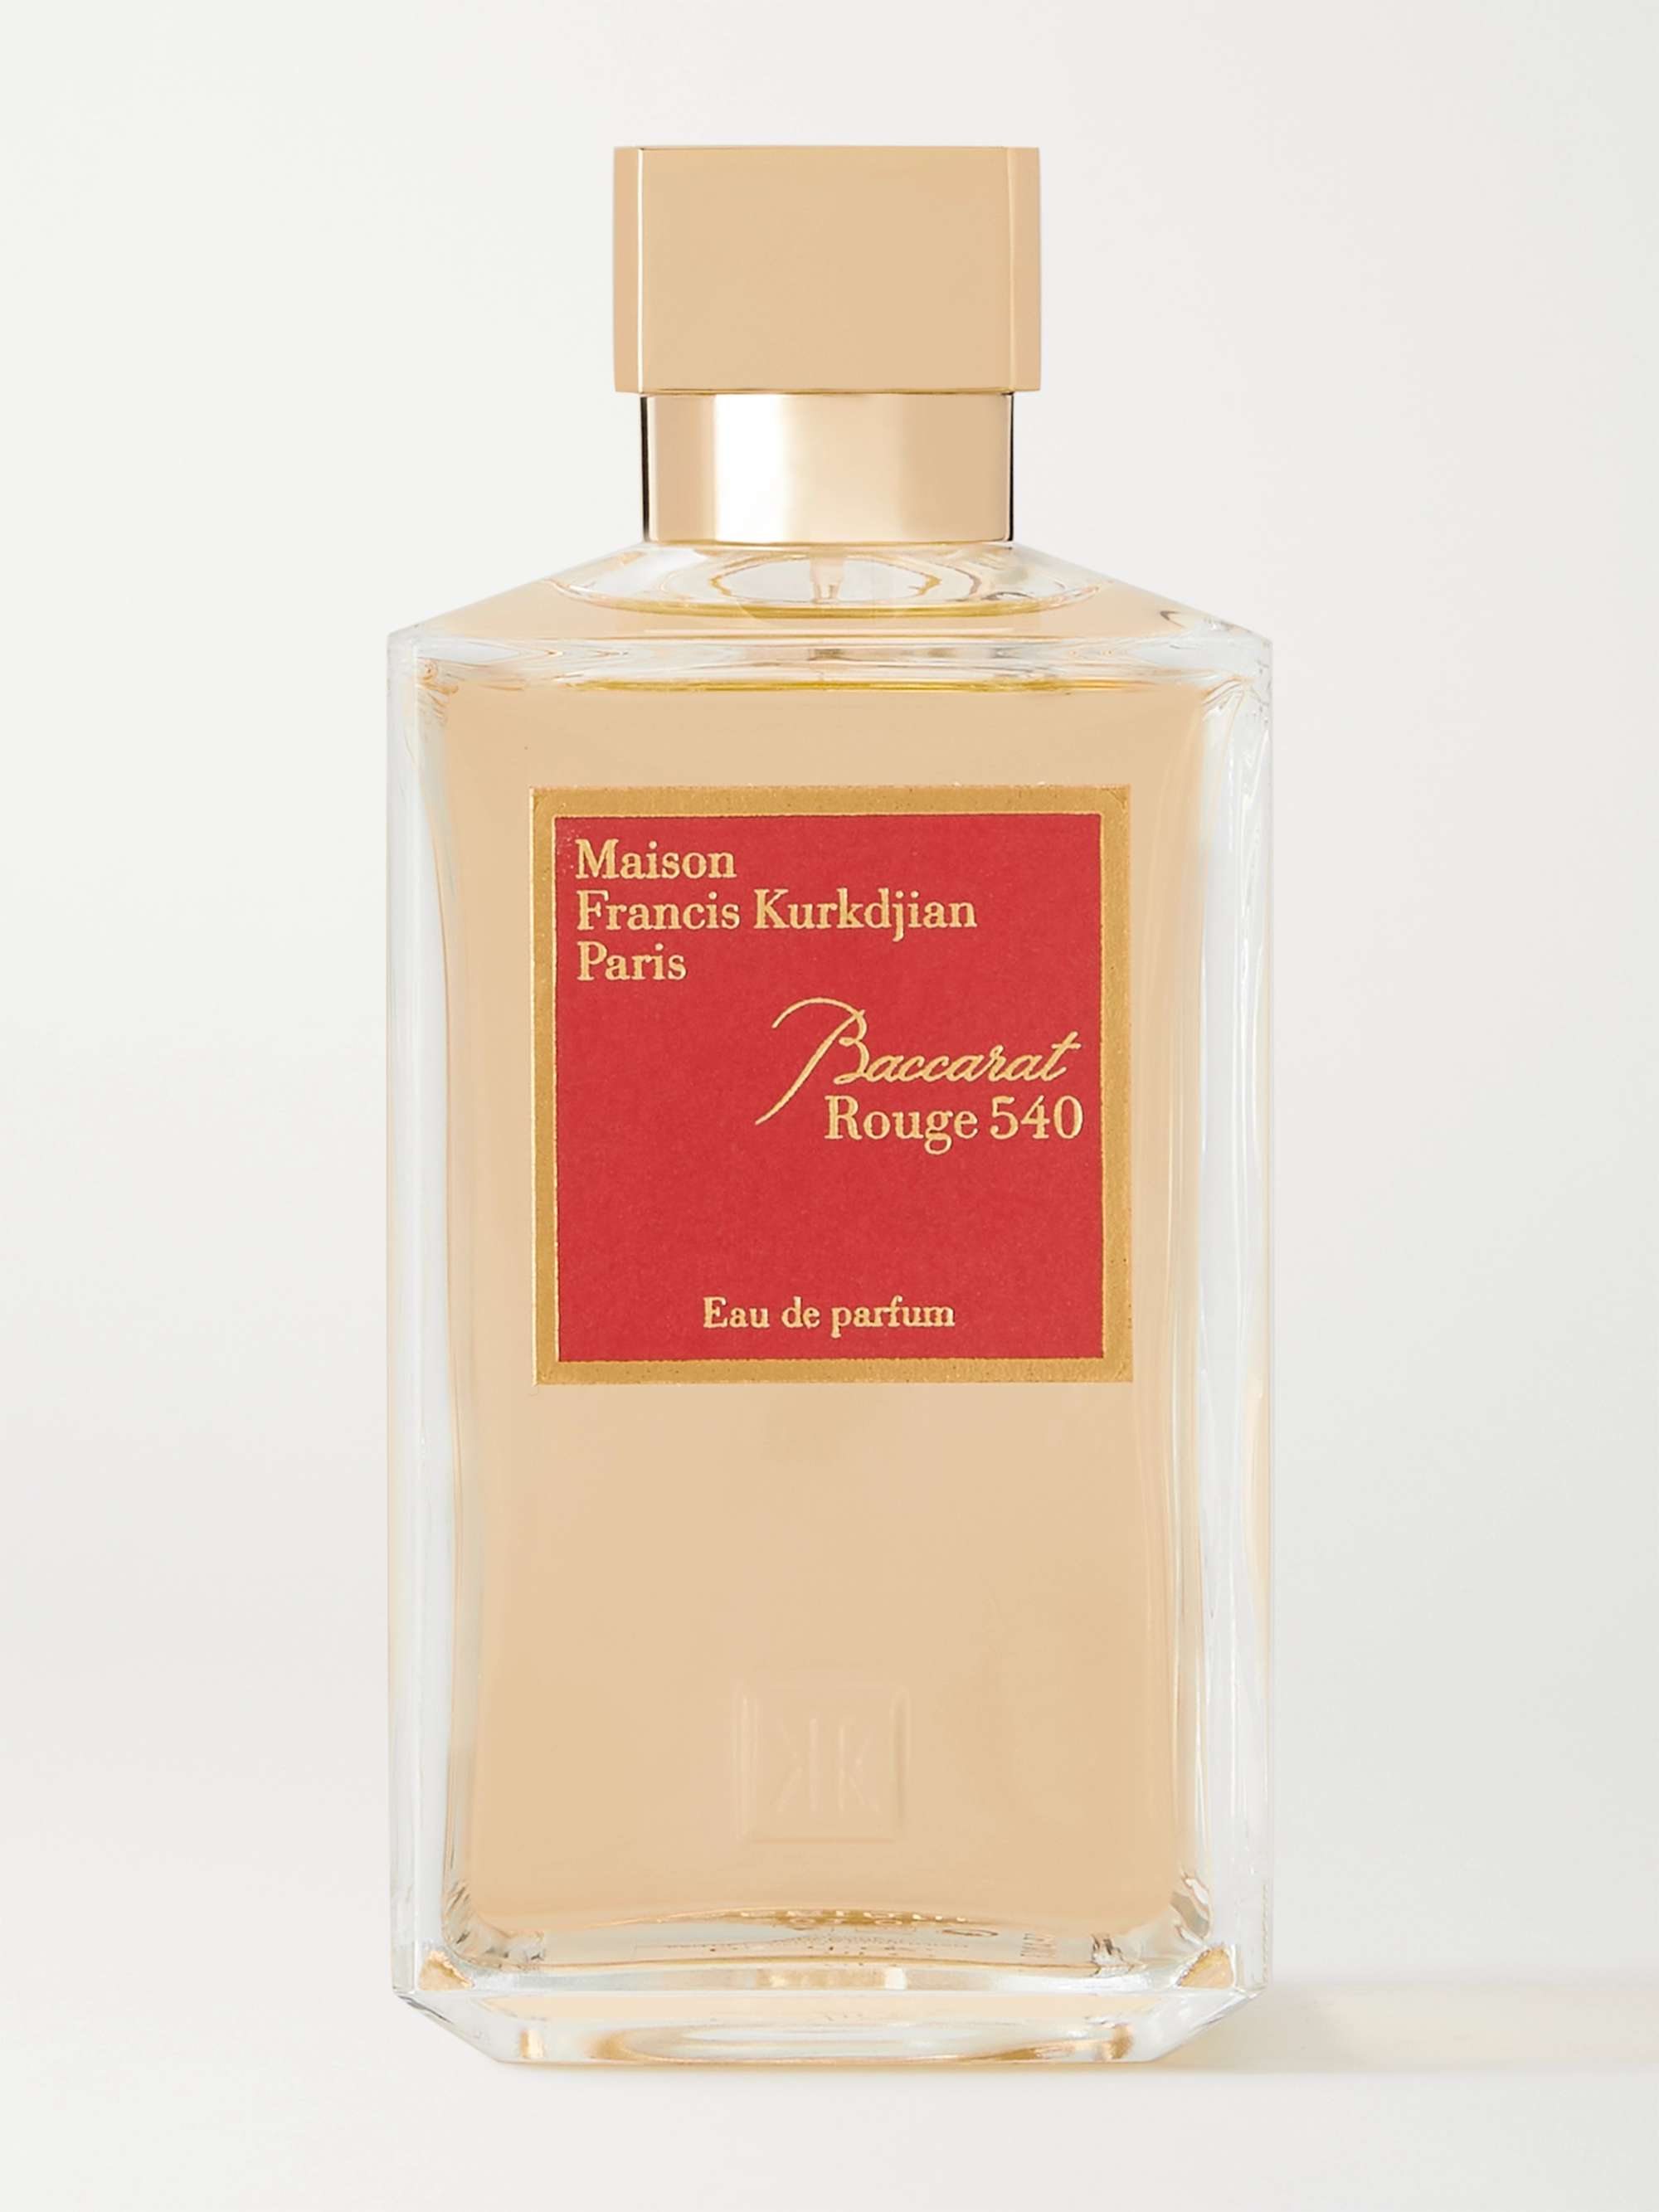 Colorless Baccarat Rouge 540 Eau de Parfum, 200ml | MAISON FRANCIS KURKDJIAN  | MR PORTER